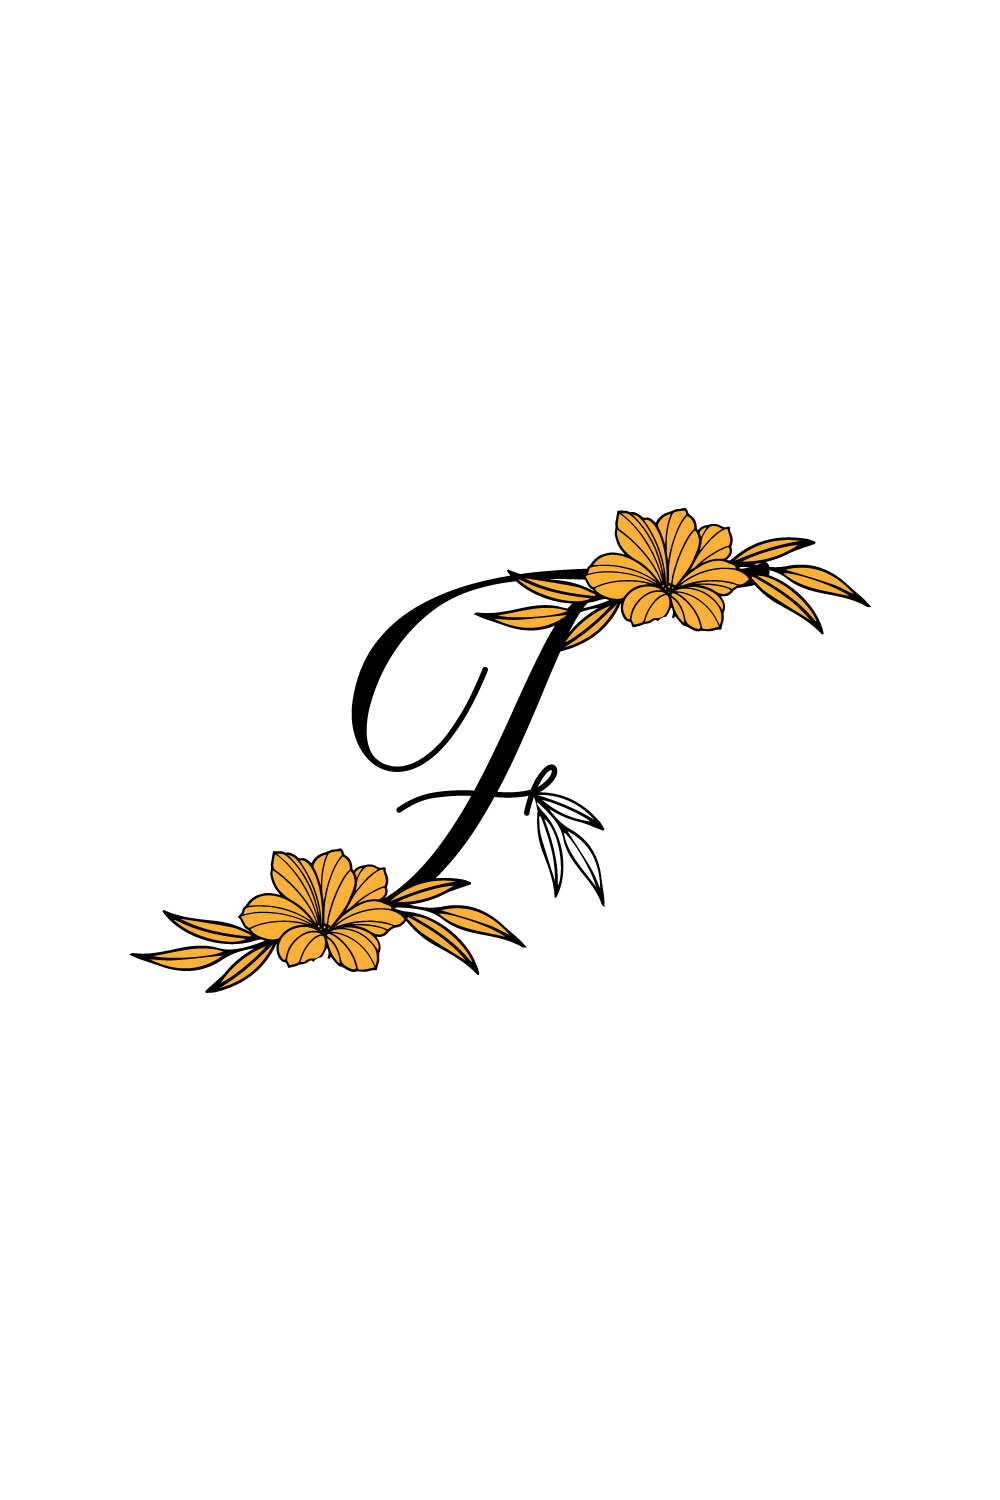 Free F Letter Flower Logo pinterest preview image.